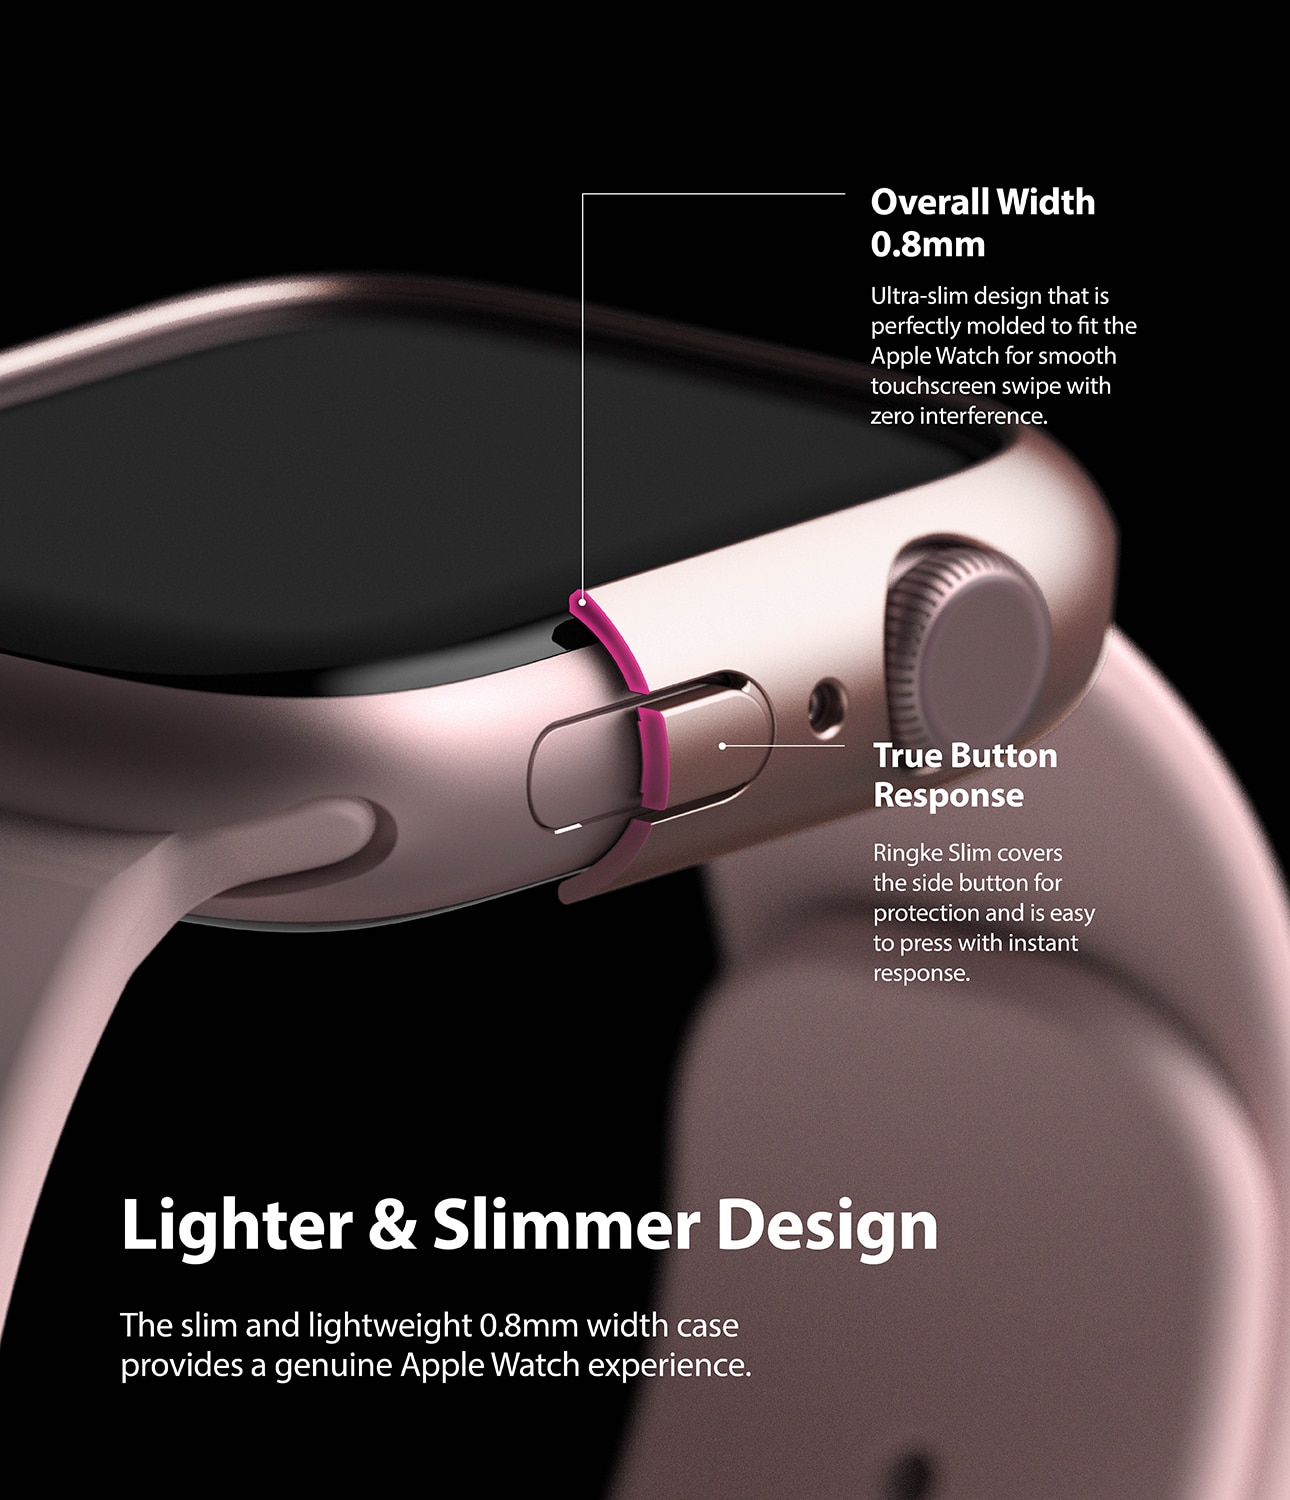 Funda Slim (2 piezas) Apple Watch 45mm Series 8 Pink & Clear